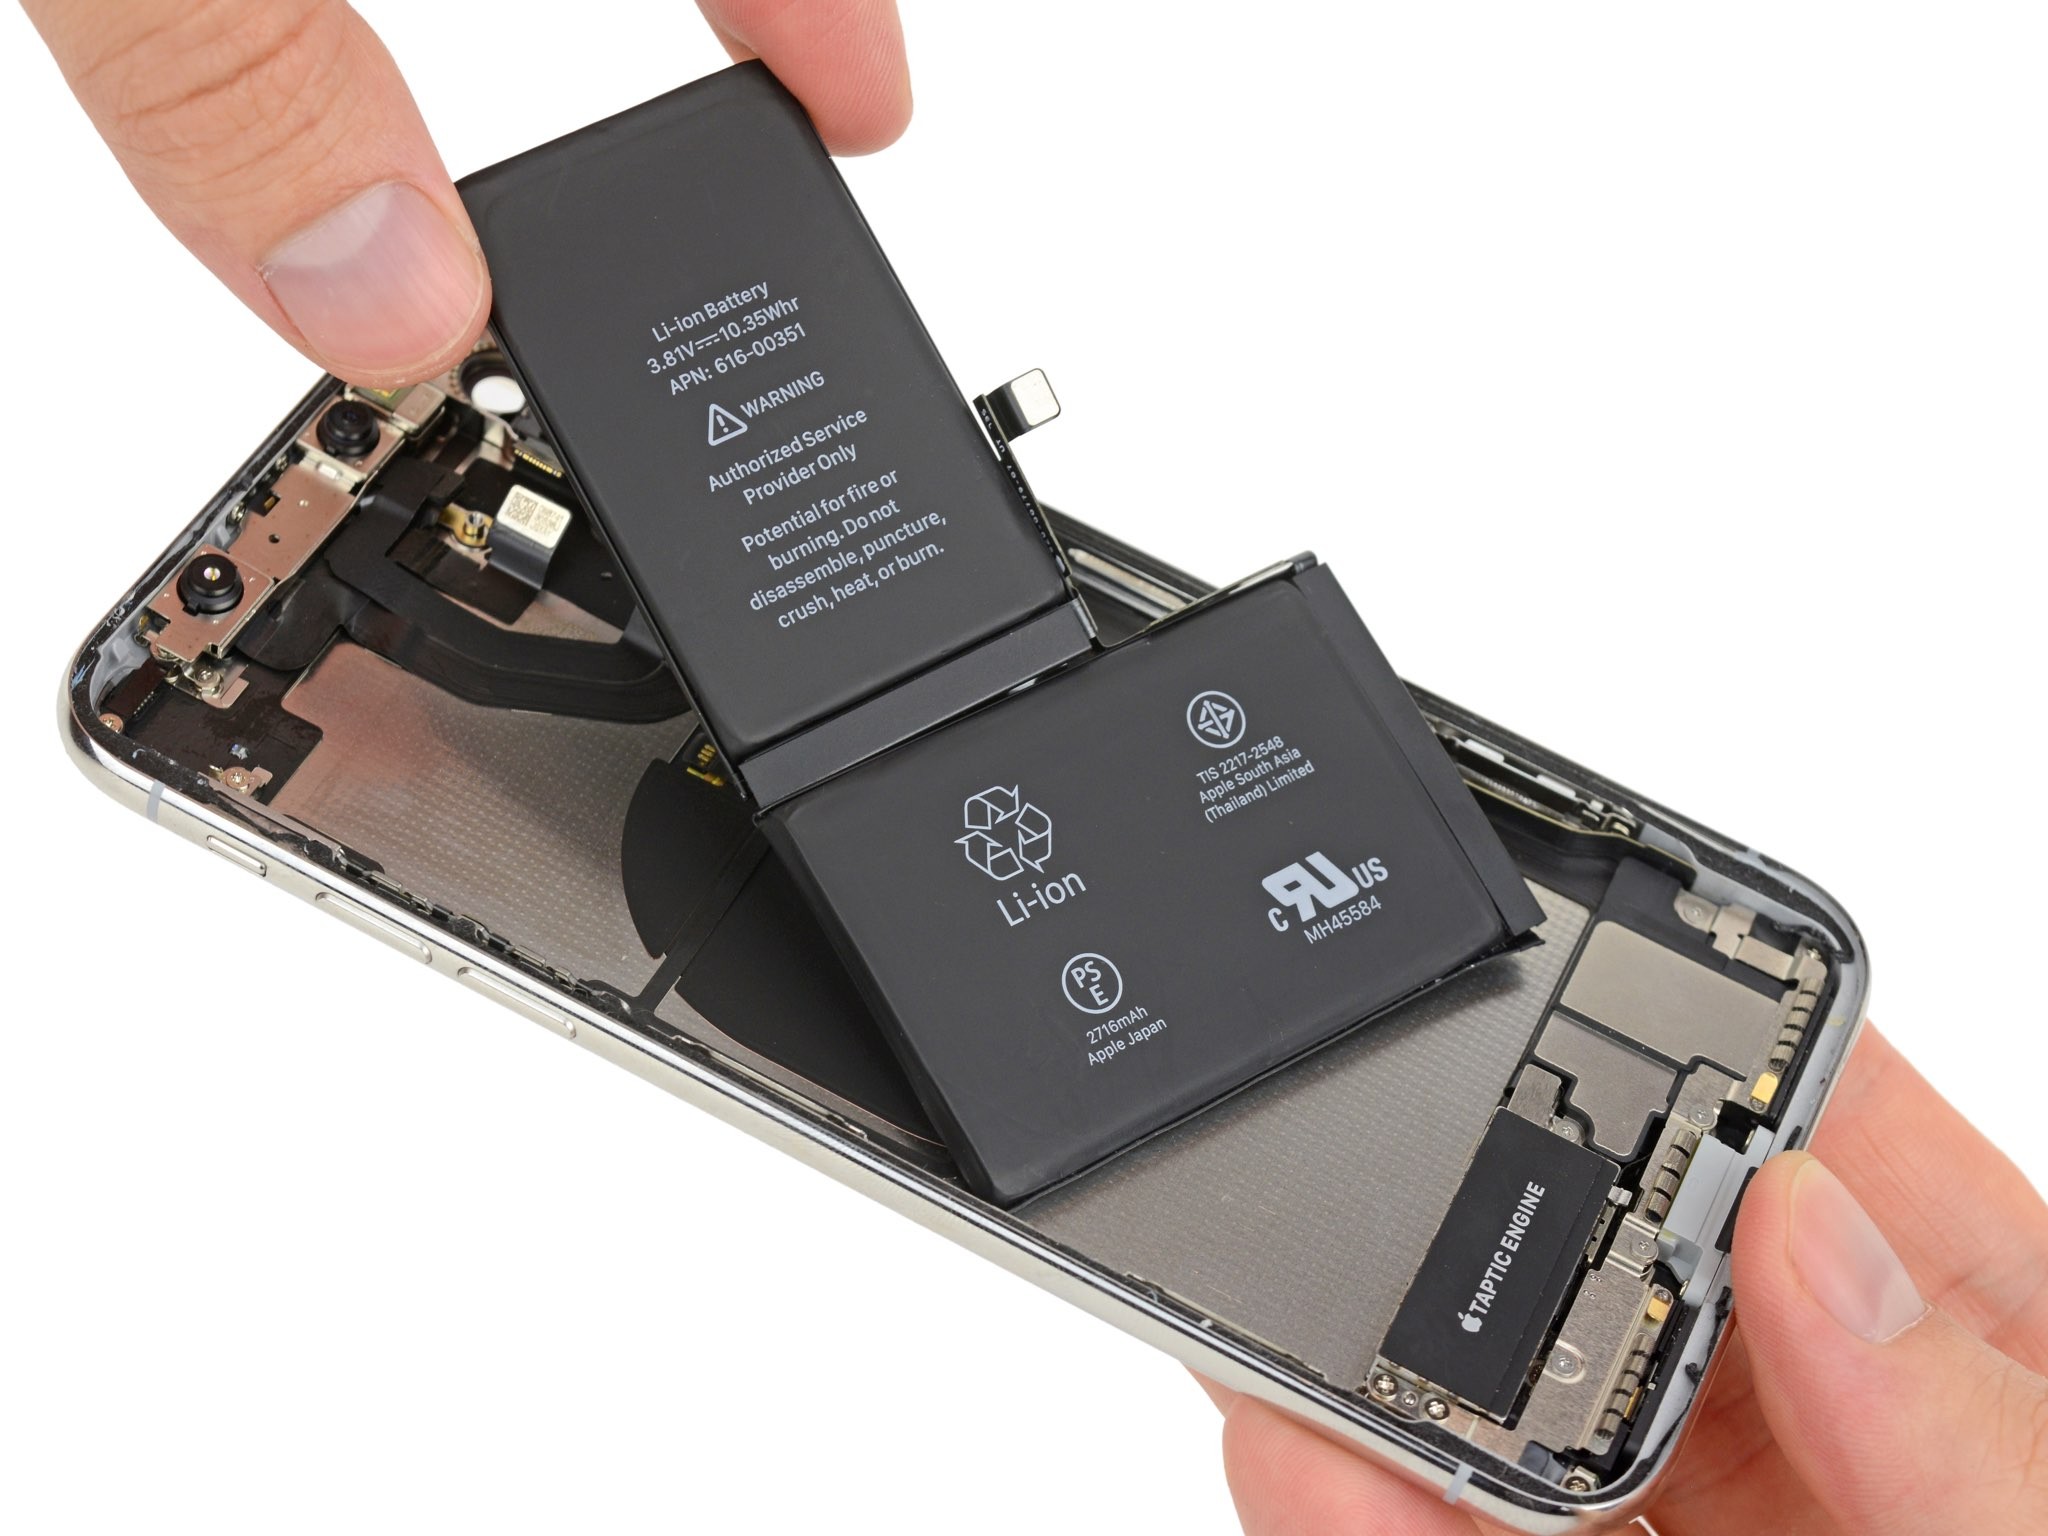 Batterie de remplacement pour iPhone X